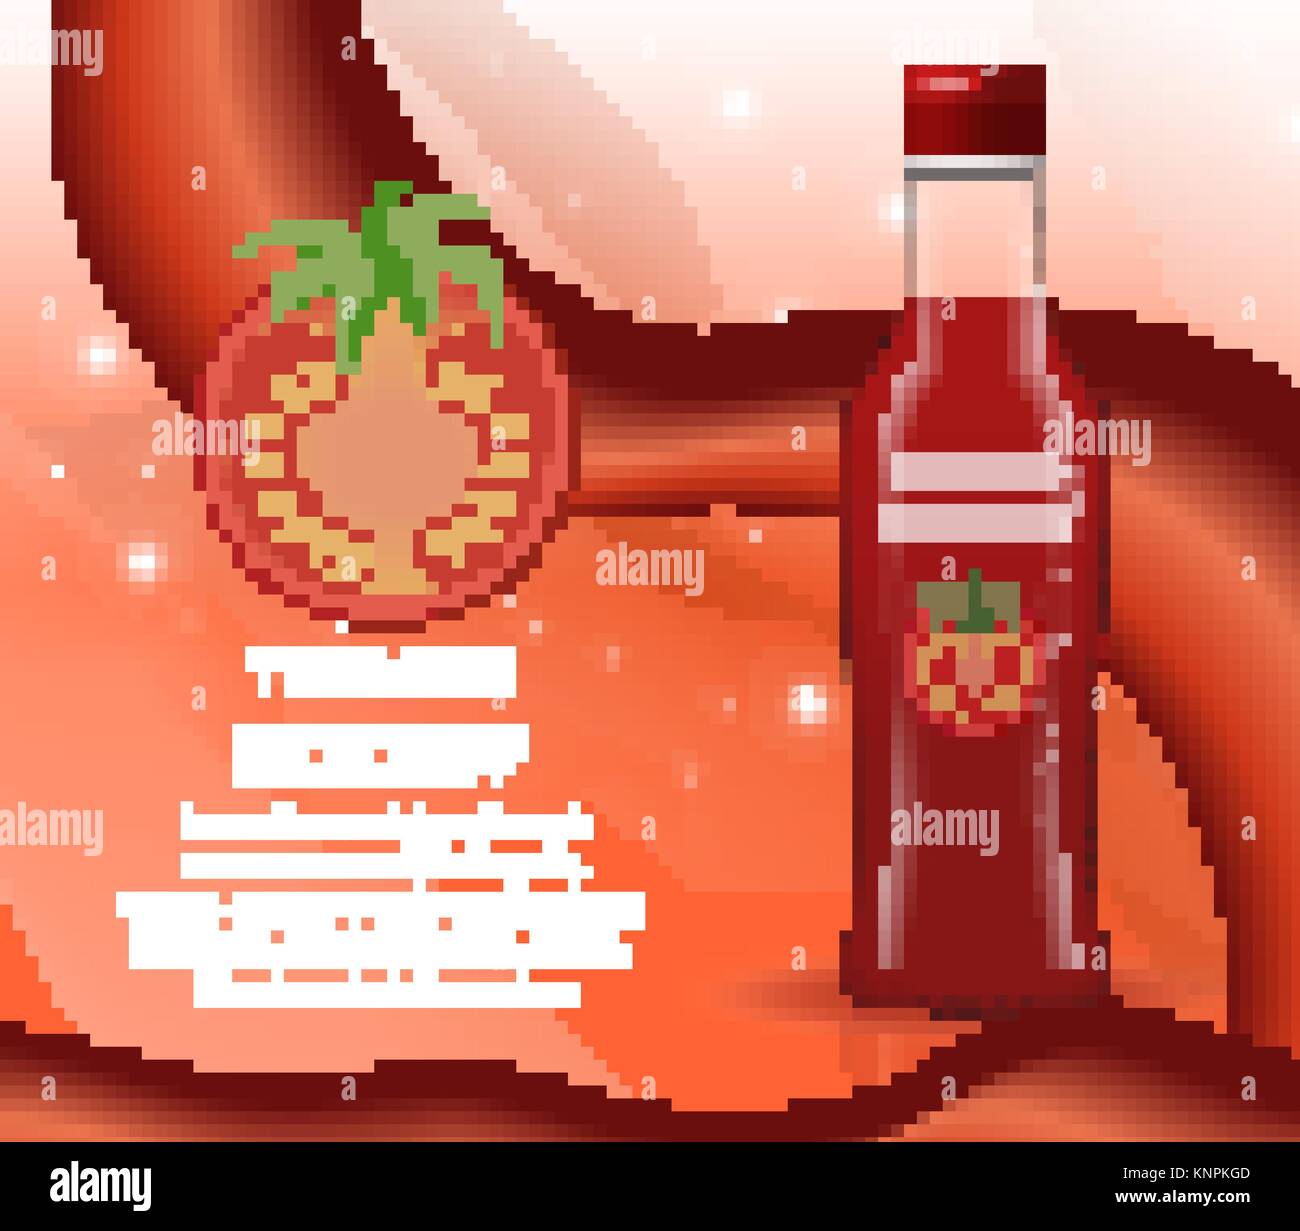 Il ketchup in una bottiglia di vetro, 3d stile realista. Papkrika salsa rossa, peperoncino. Mock-up per il design di prodotto. Illustrazione Vettoriale. Illustrazione Vettoriale